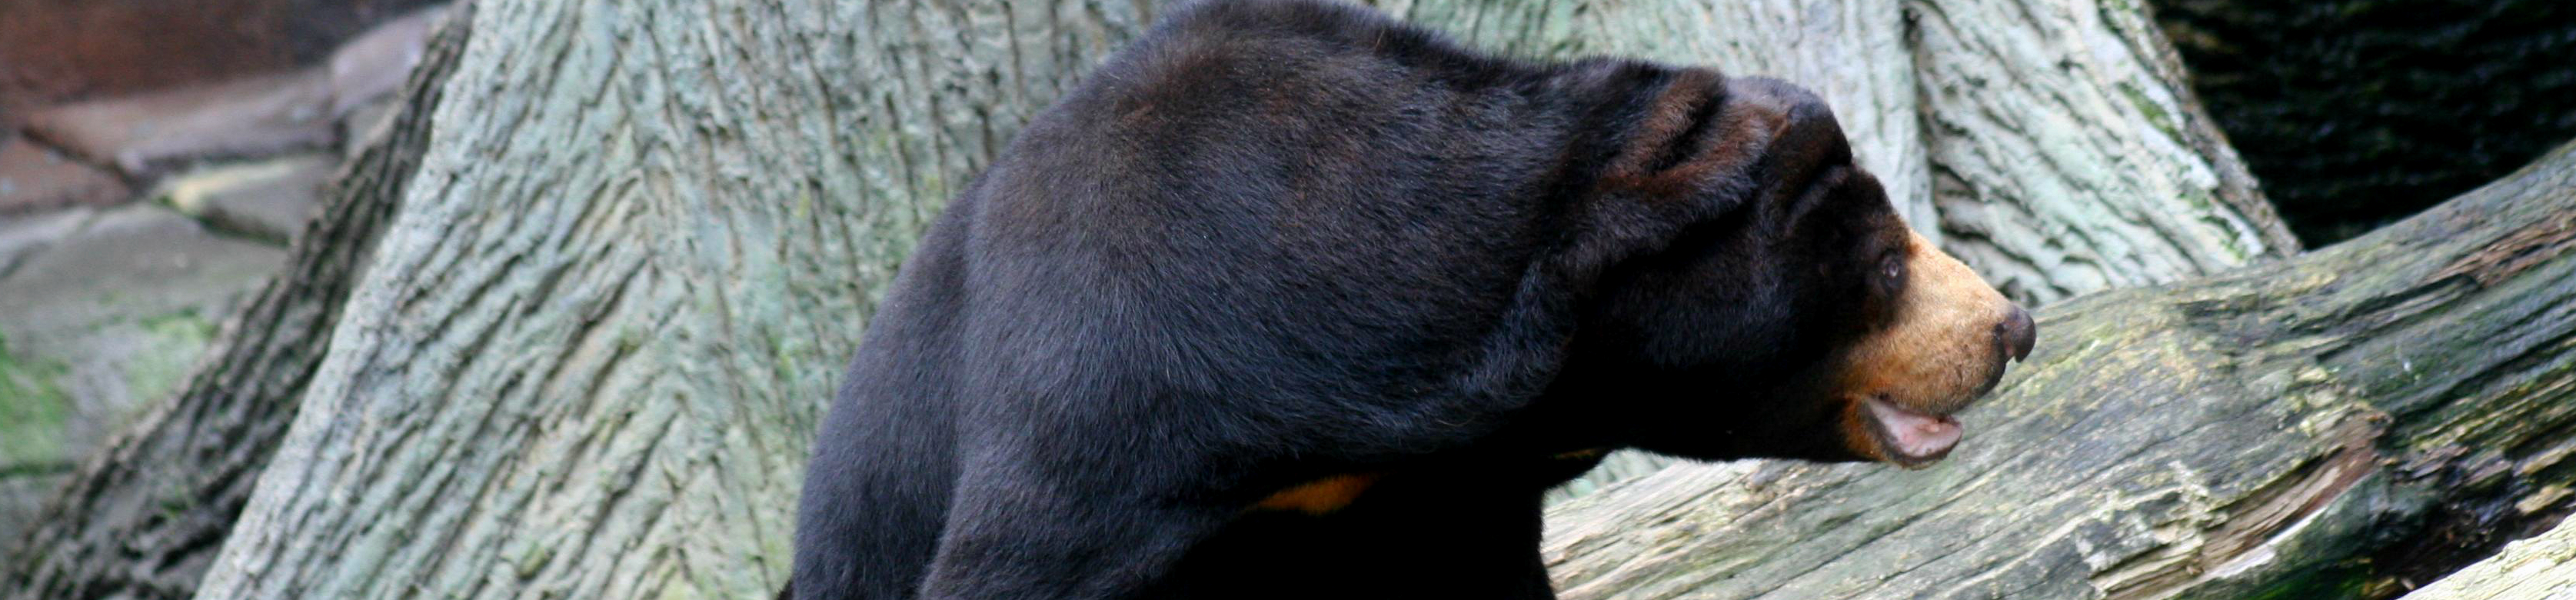 Black bear against gray background